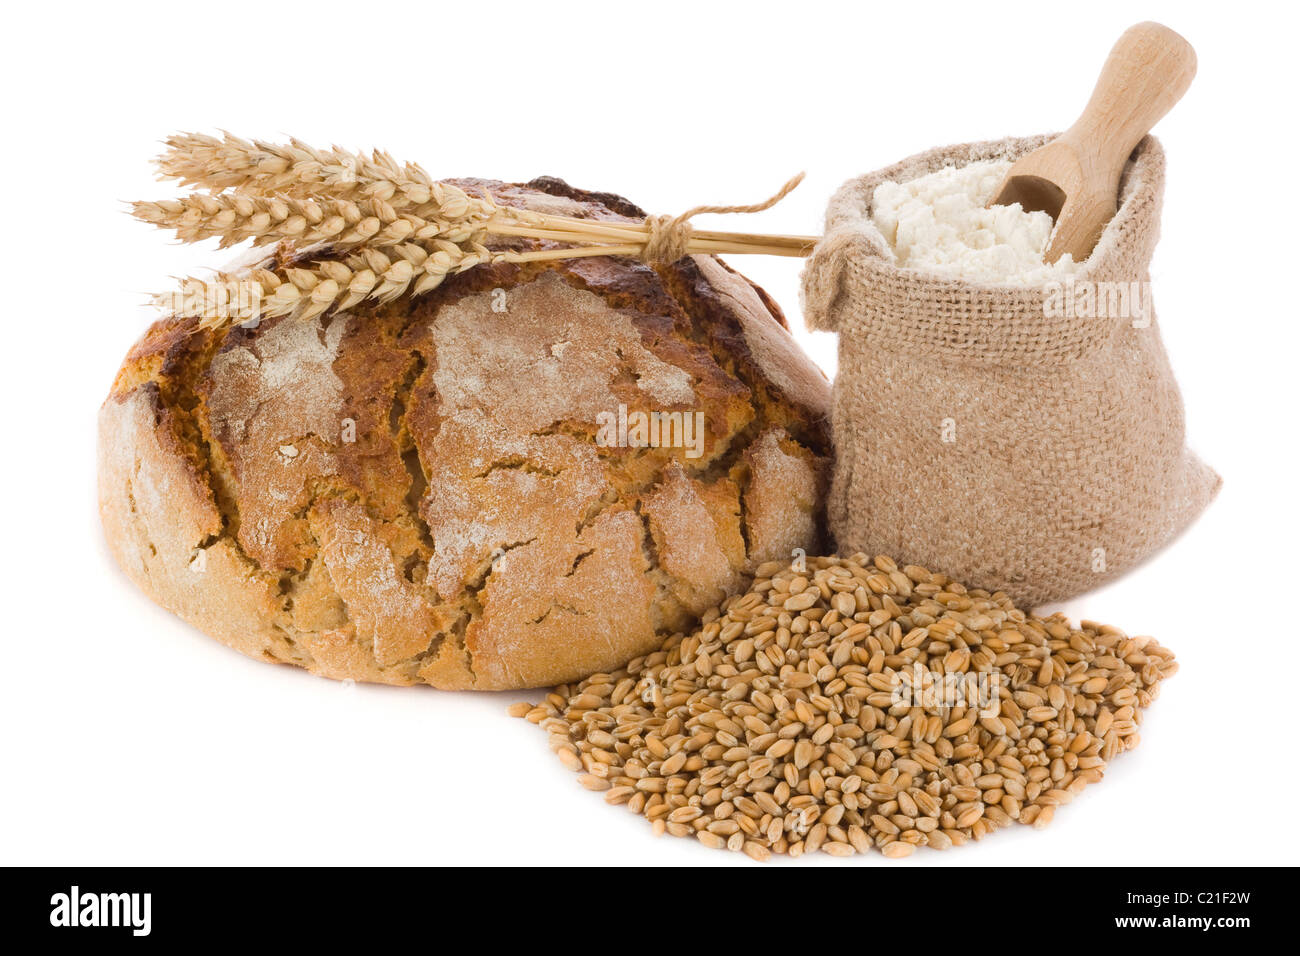 Du pain frais, des céréales et de la farine de blé dans de petits sacs de jute Banque D'Images